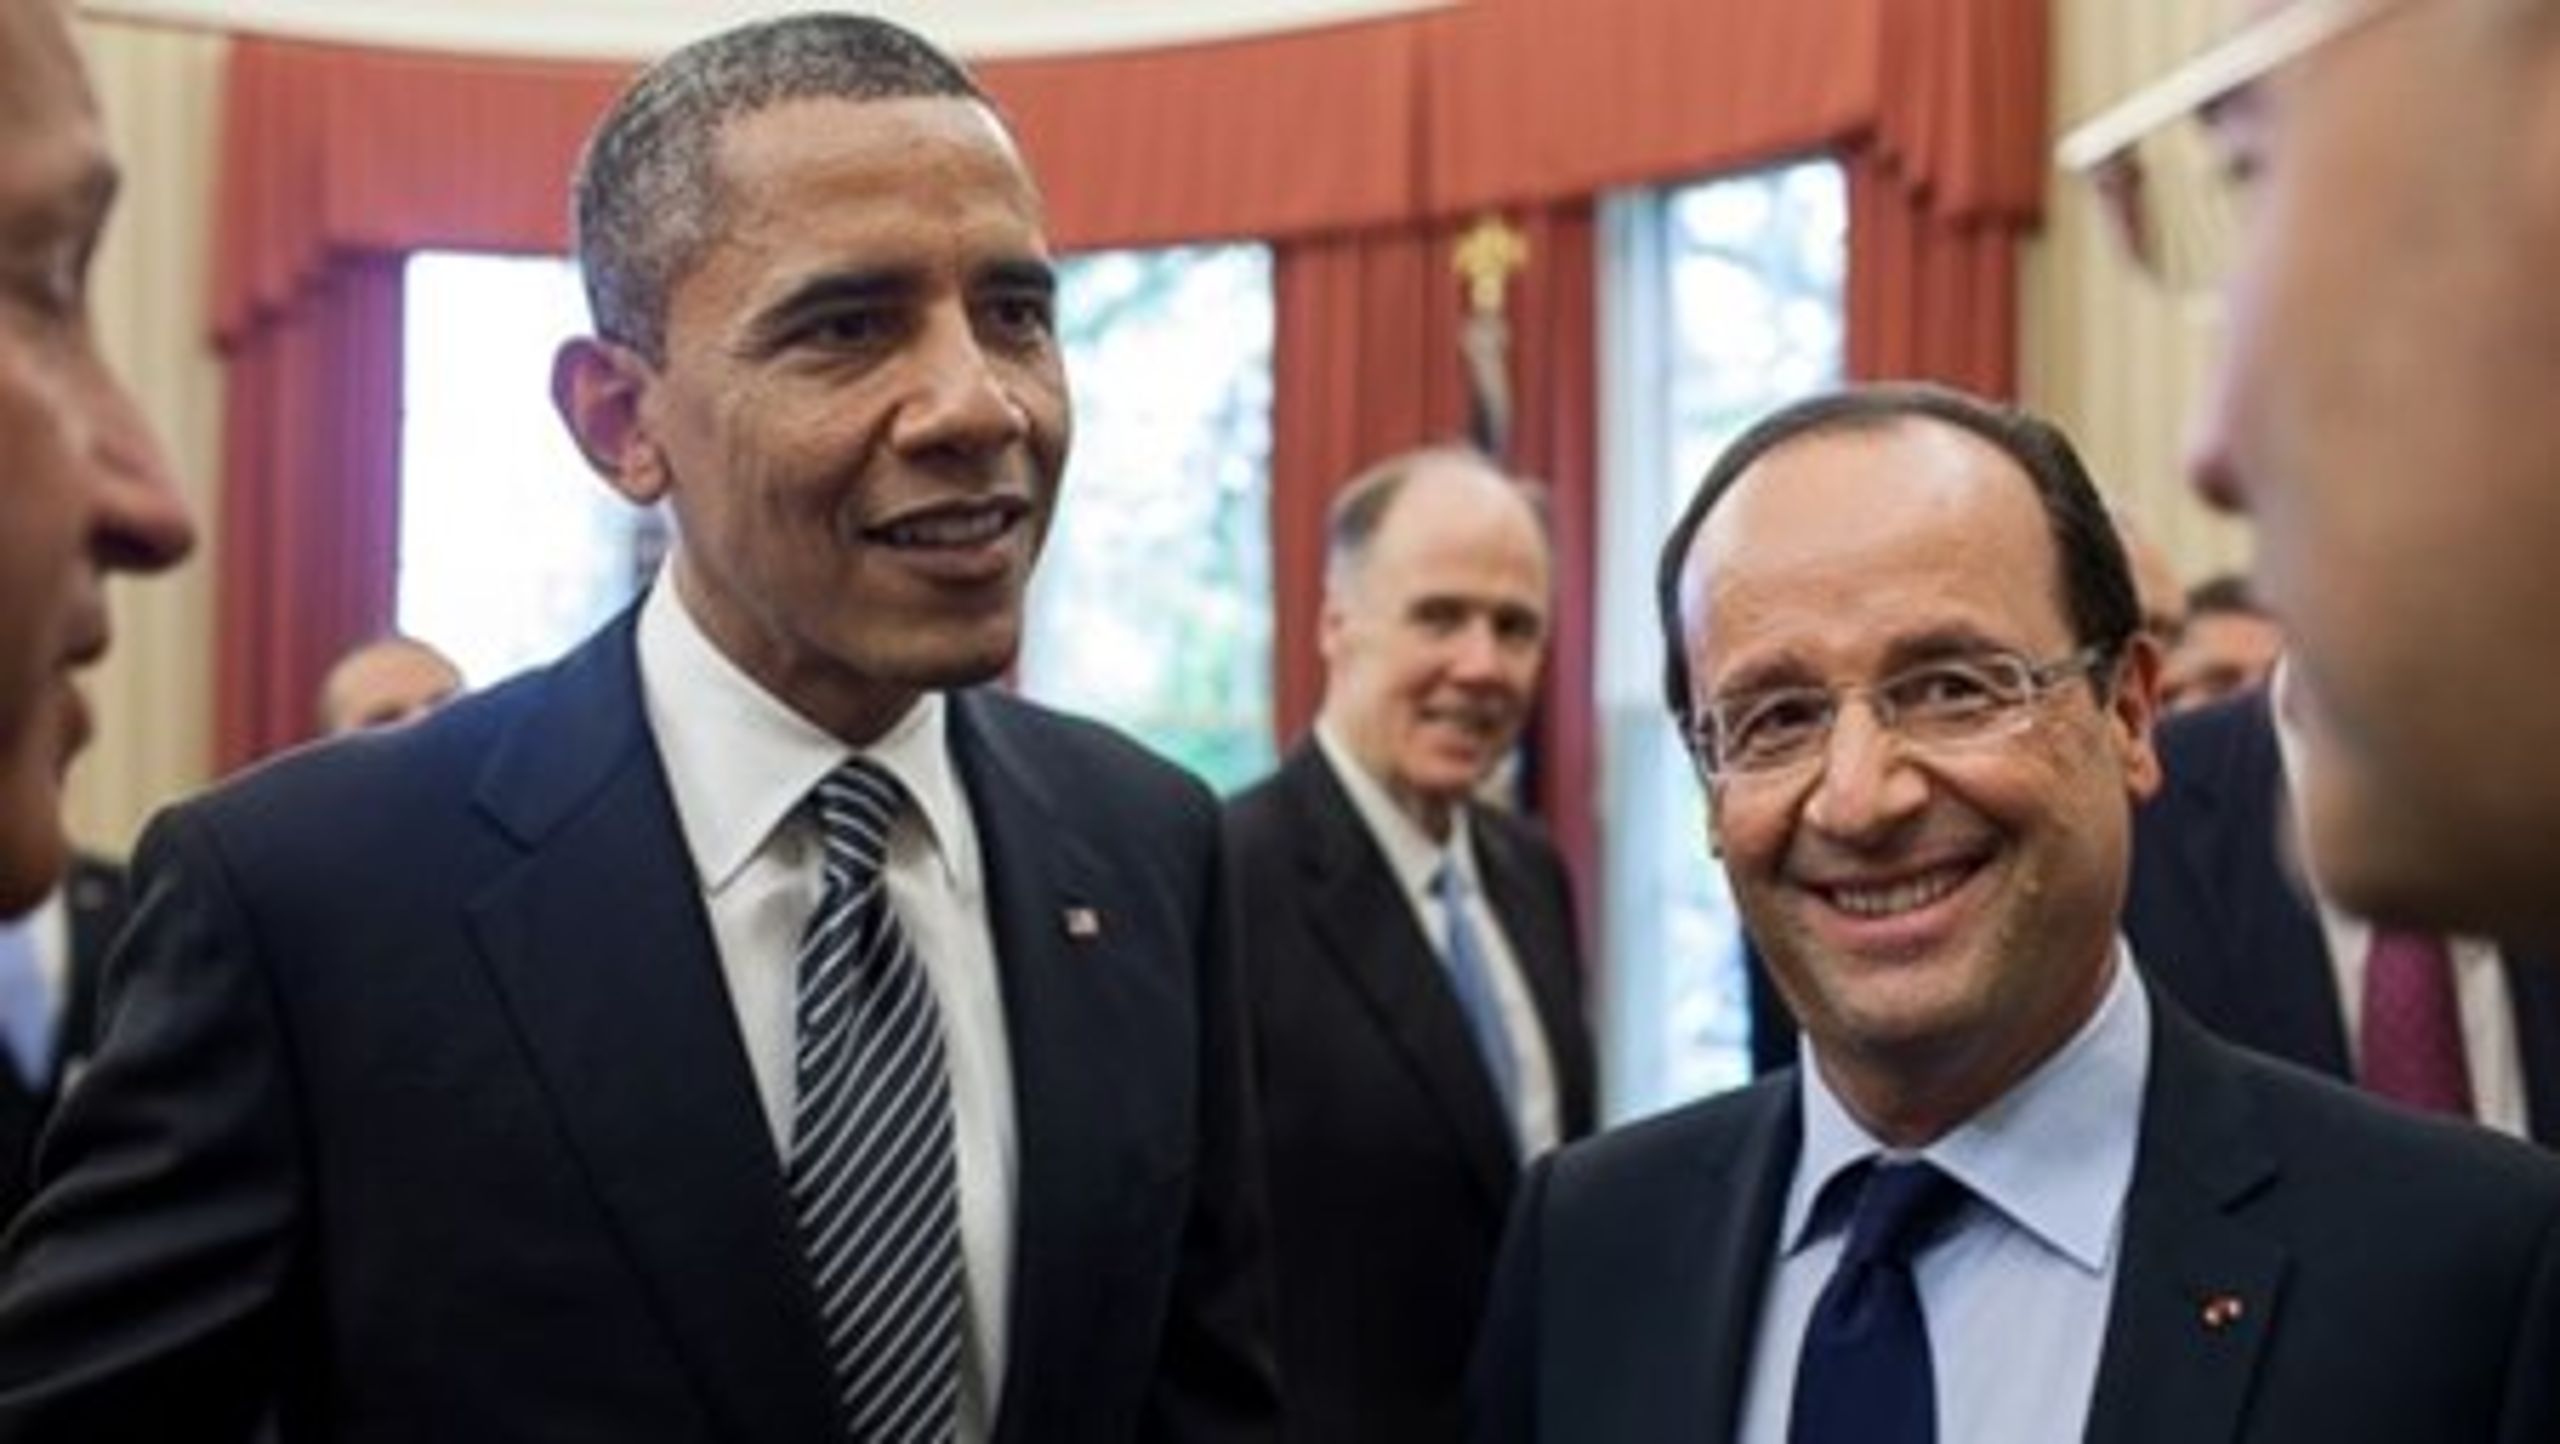 Obama-administrationen er forsigtige optimister forud for klimatopmødet i Paris næste år.<br>